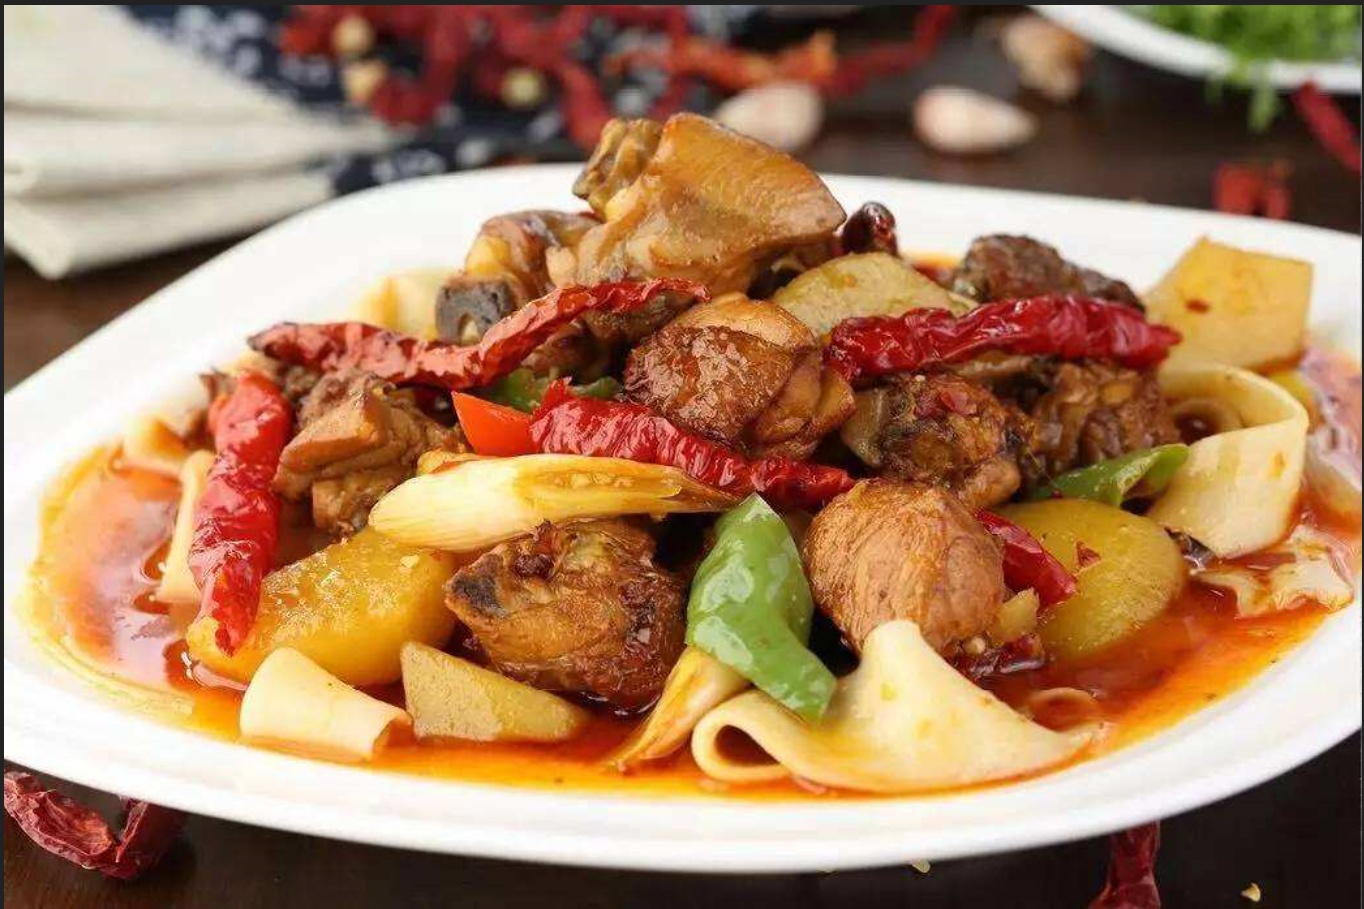 新疆大盘鸡:地道新疆名菜,口感爽滑麻辣,一道餐桌上的佳品